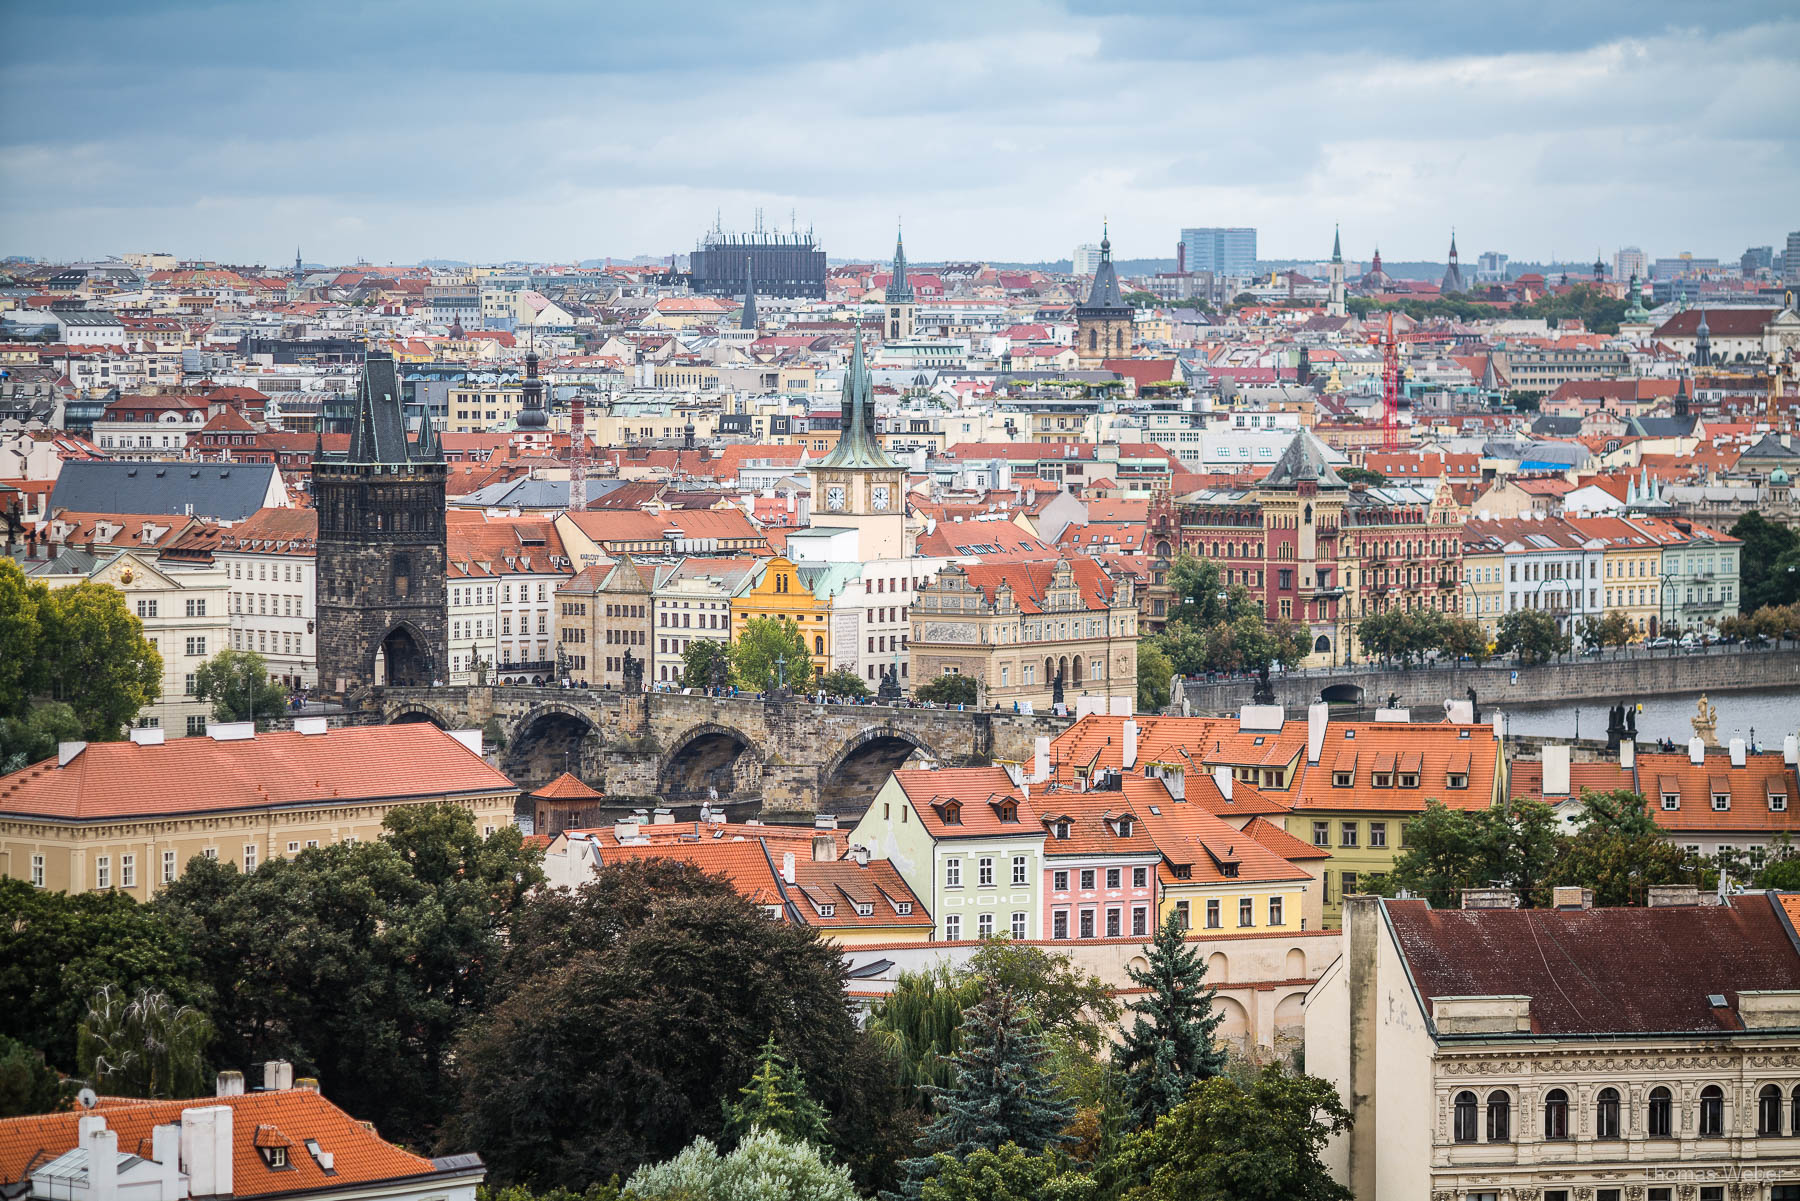 Ausblick von der Prager Burg (Pražský hrad) über die Stadt, Fotograf Thomas Weber aus Oldenburg